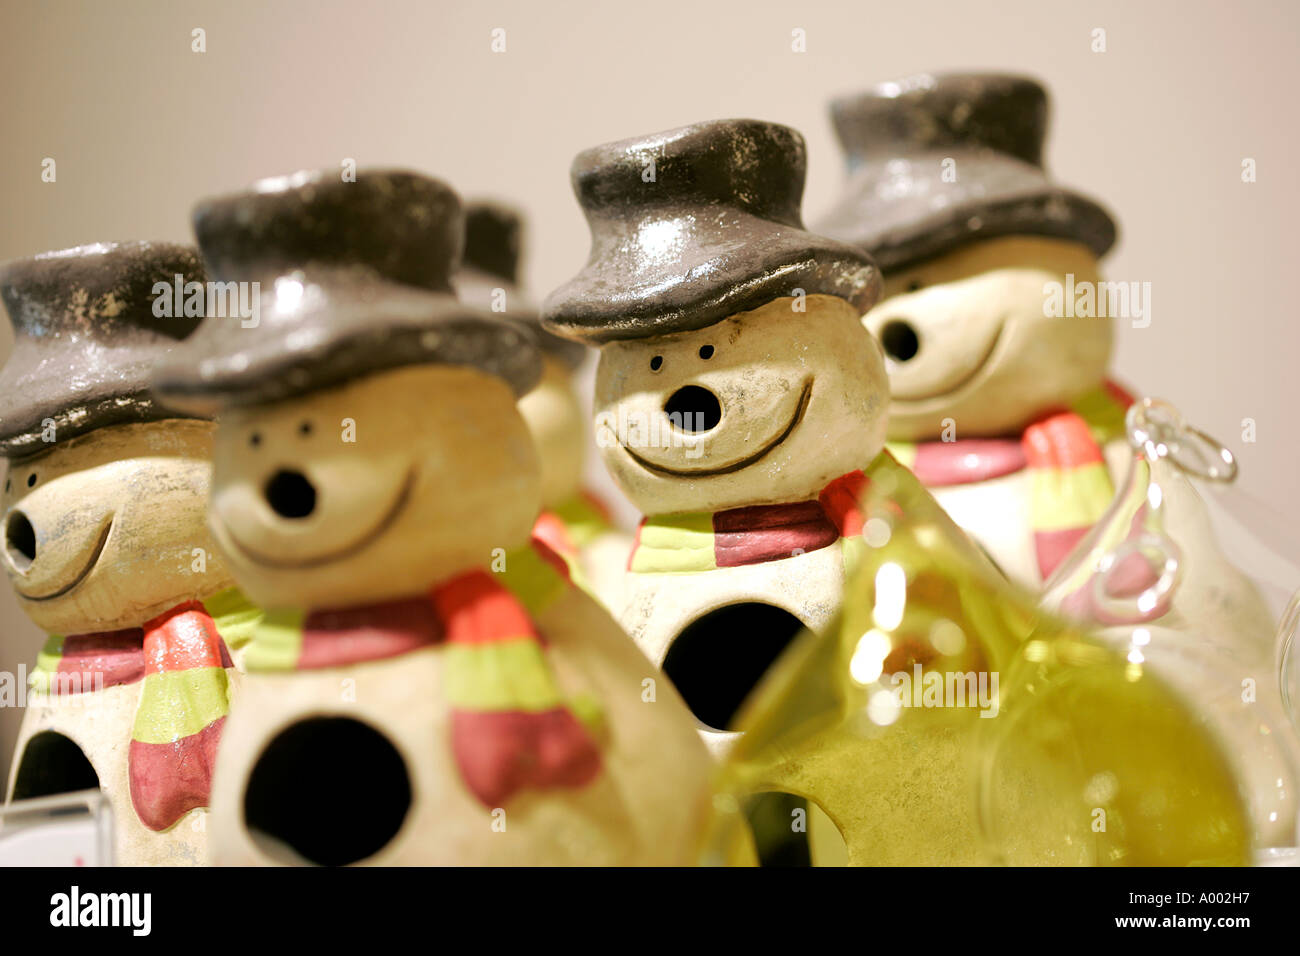 Schneemann Weihnachten X-Mas Dekoration, Christian Vater Weihnachtsbeleuchtung Spielzeug Silvester Neujahr Puppe dekorieren Party Feier, präsentiert Stockfoto